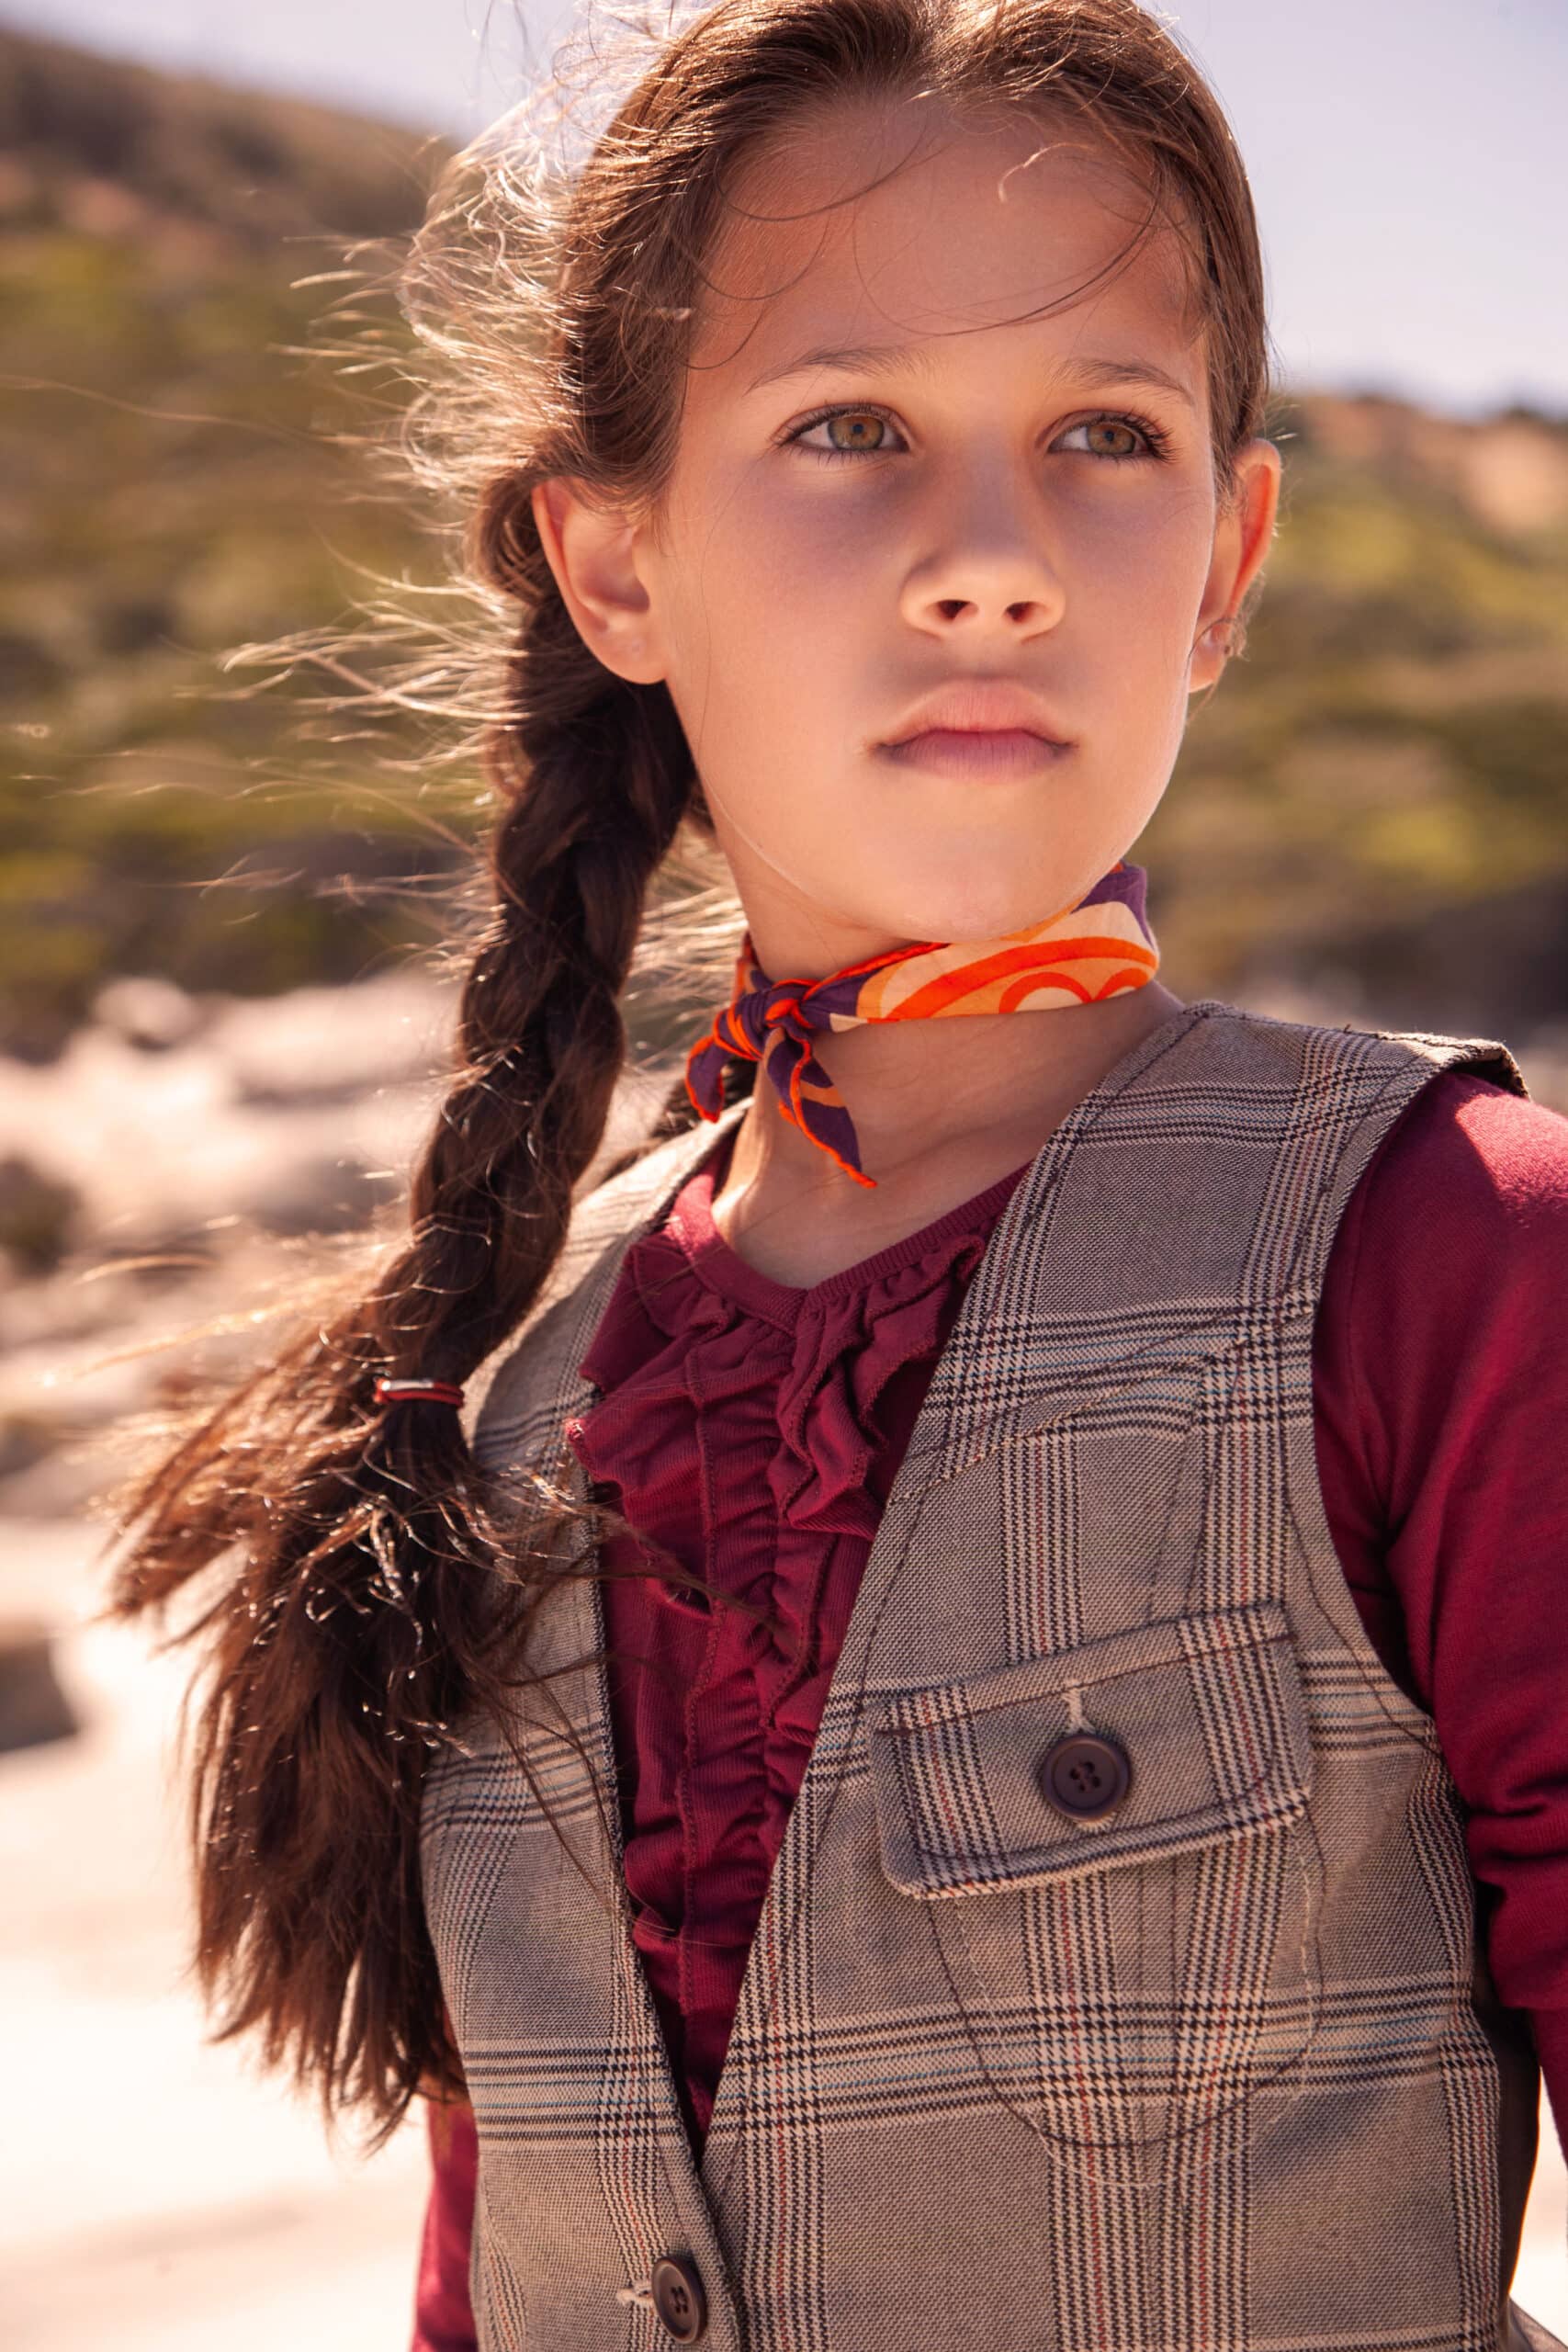 Ein junges Mädchen mit Zopf und nachdenklichem Gesichtsausdruck steht im Freien. Es trägt eine Tweedweste, eine rote Bluse und einen orangefarbenen Schal um den Hals vor einem sandigen und bewachsenen Hintergrund. © Fotografie Tomas Rodriguez